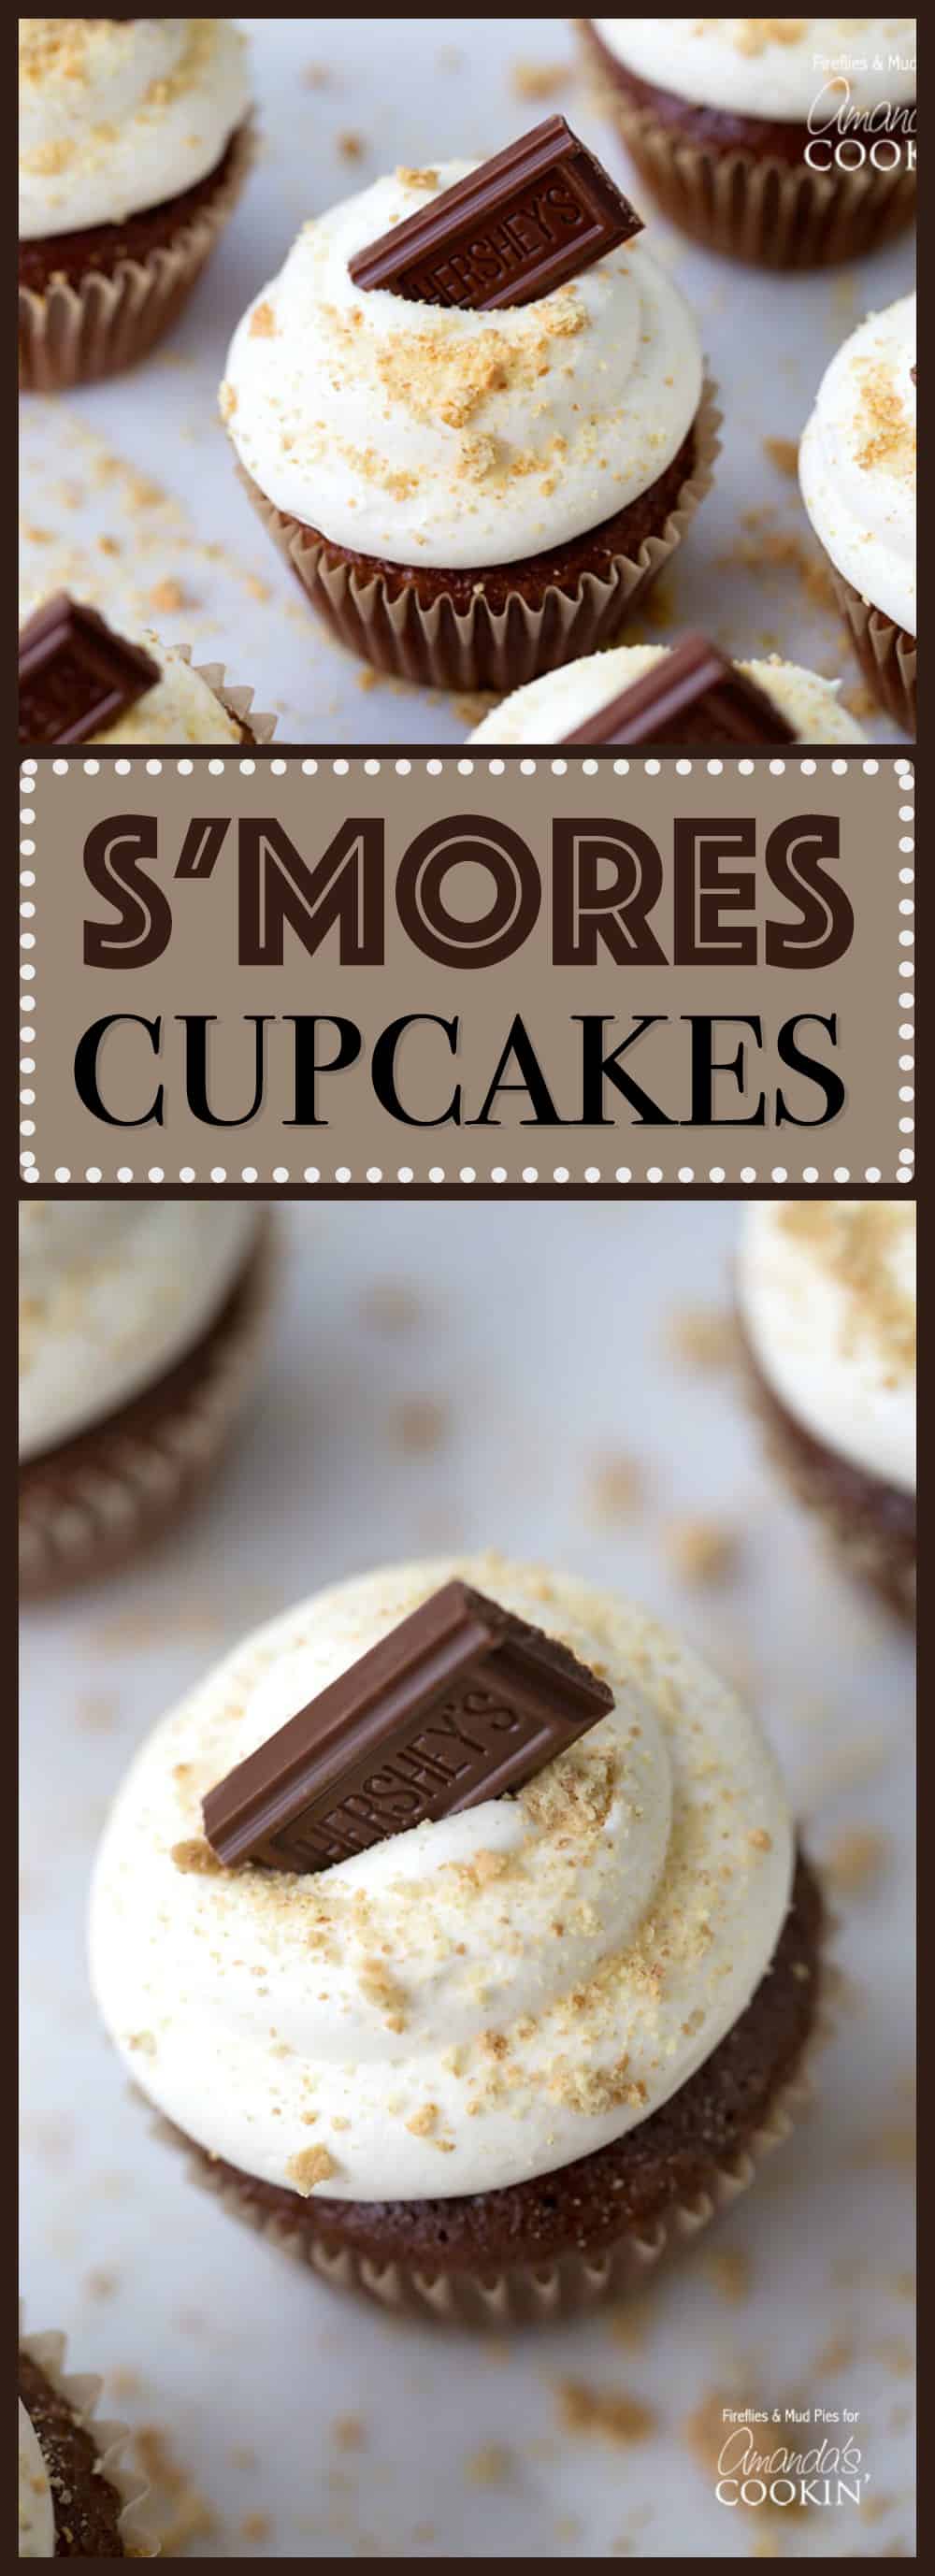 Photos of a s\'mores cupcake.